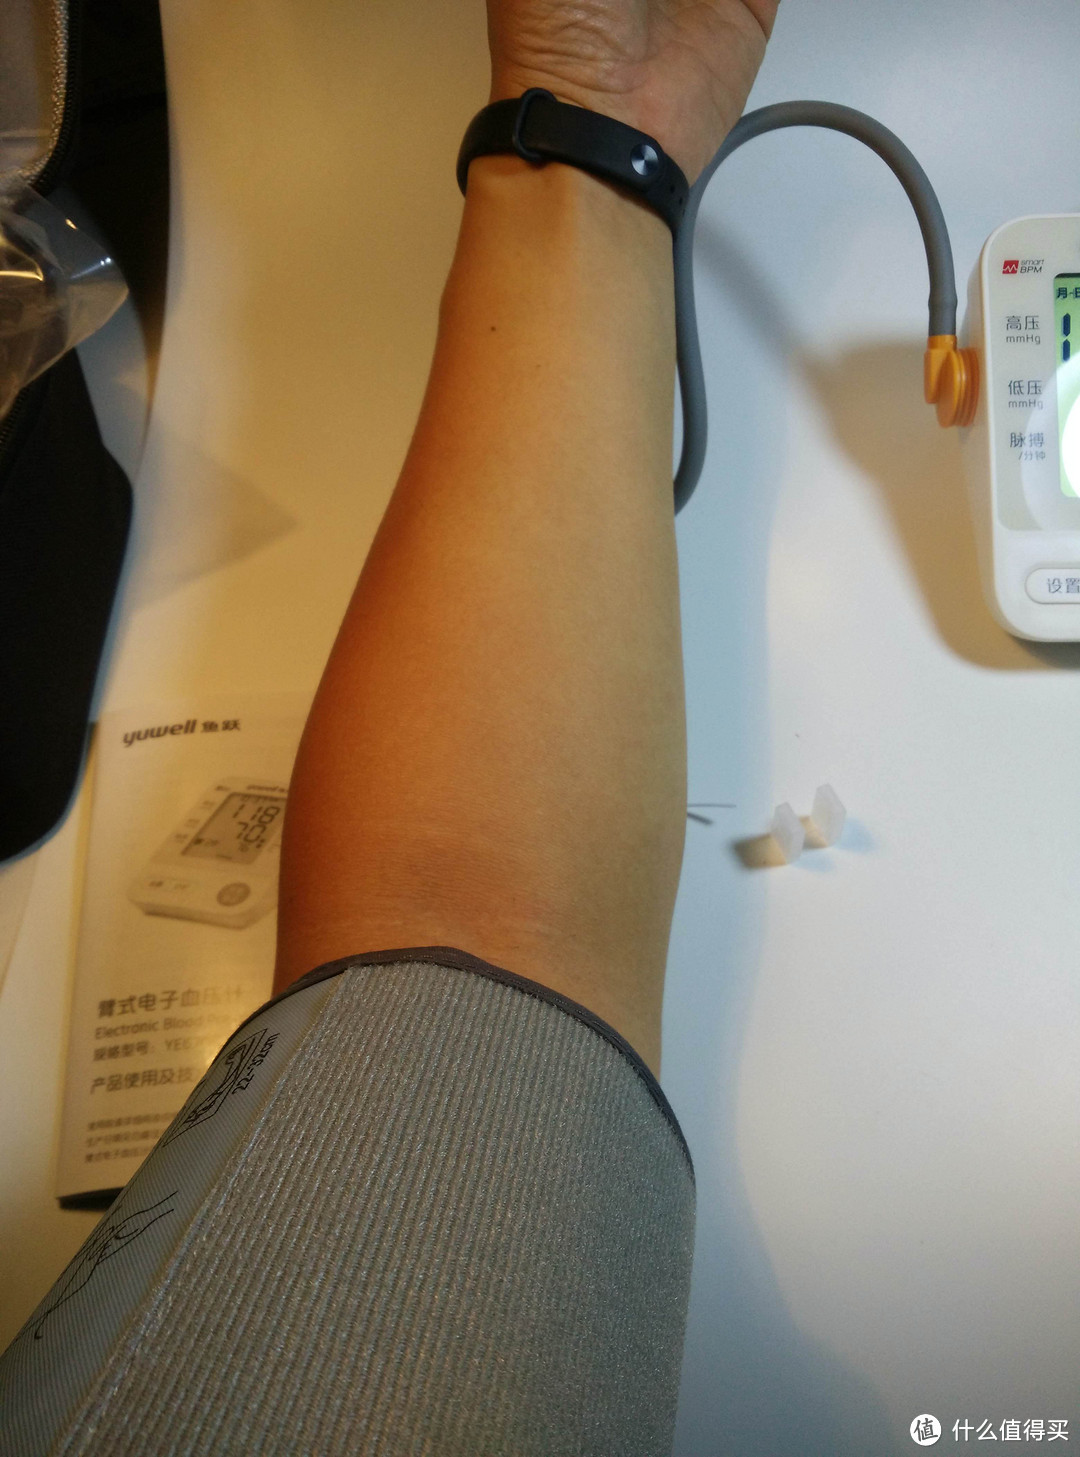 小测：yuwell 鱼跃 670D 上臂式血压测量仪